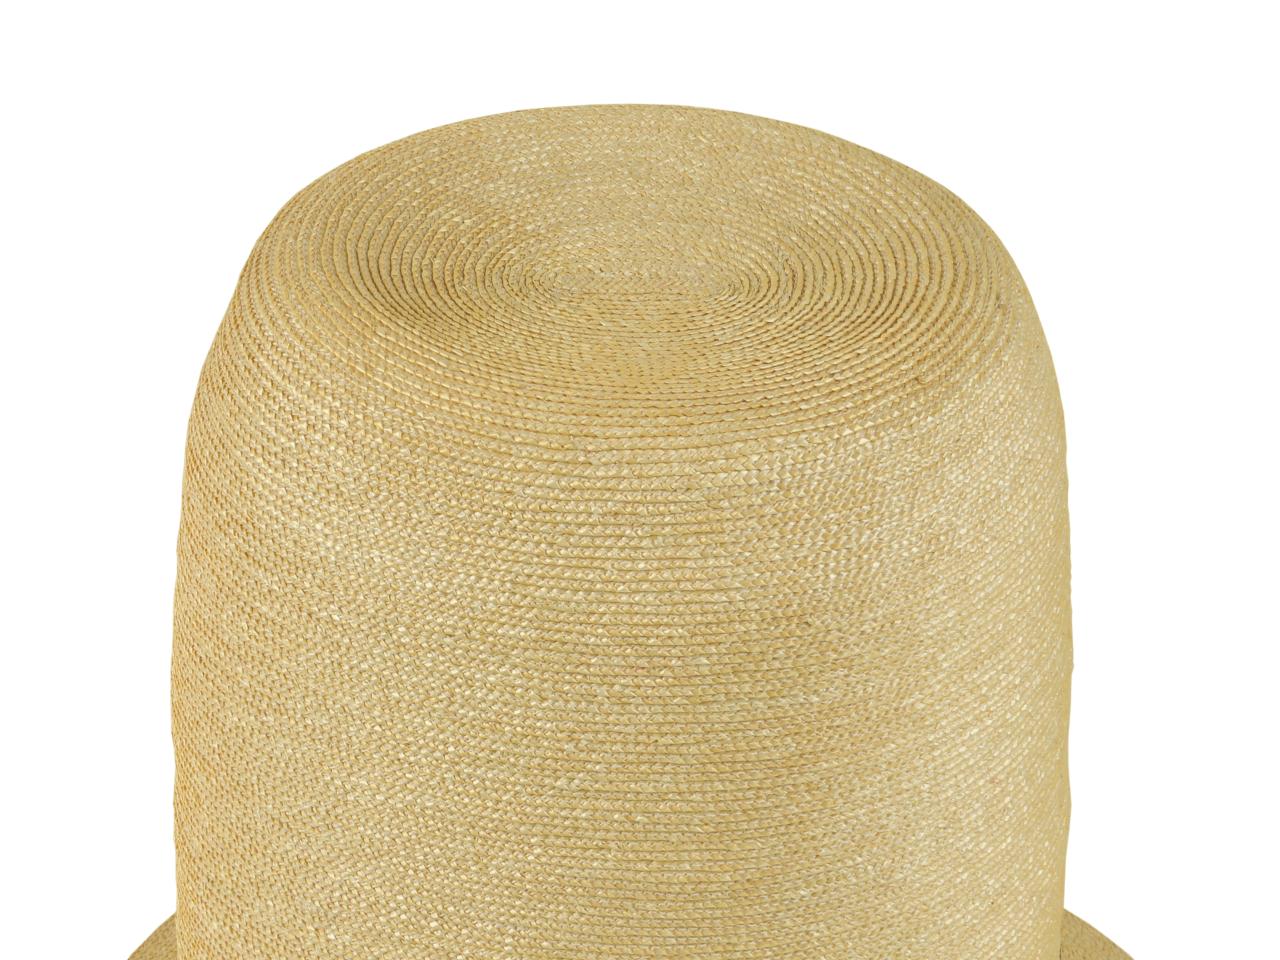 Detalle de copa hundida, sombrero tipo Rugendas, tejido en paja teatina natural